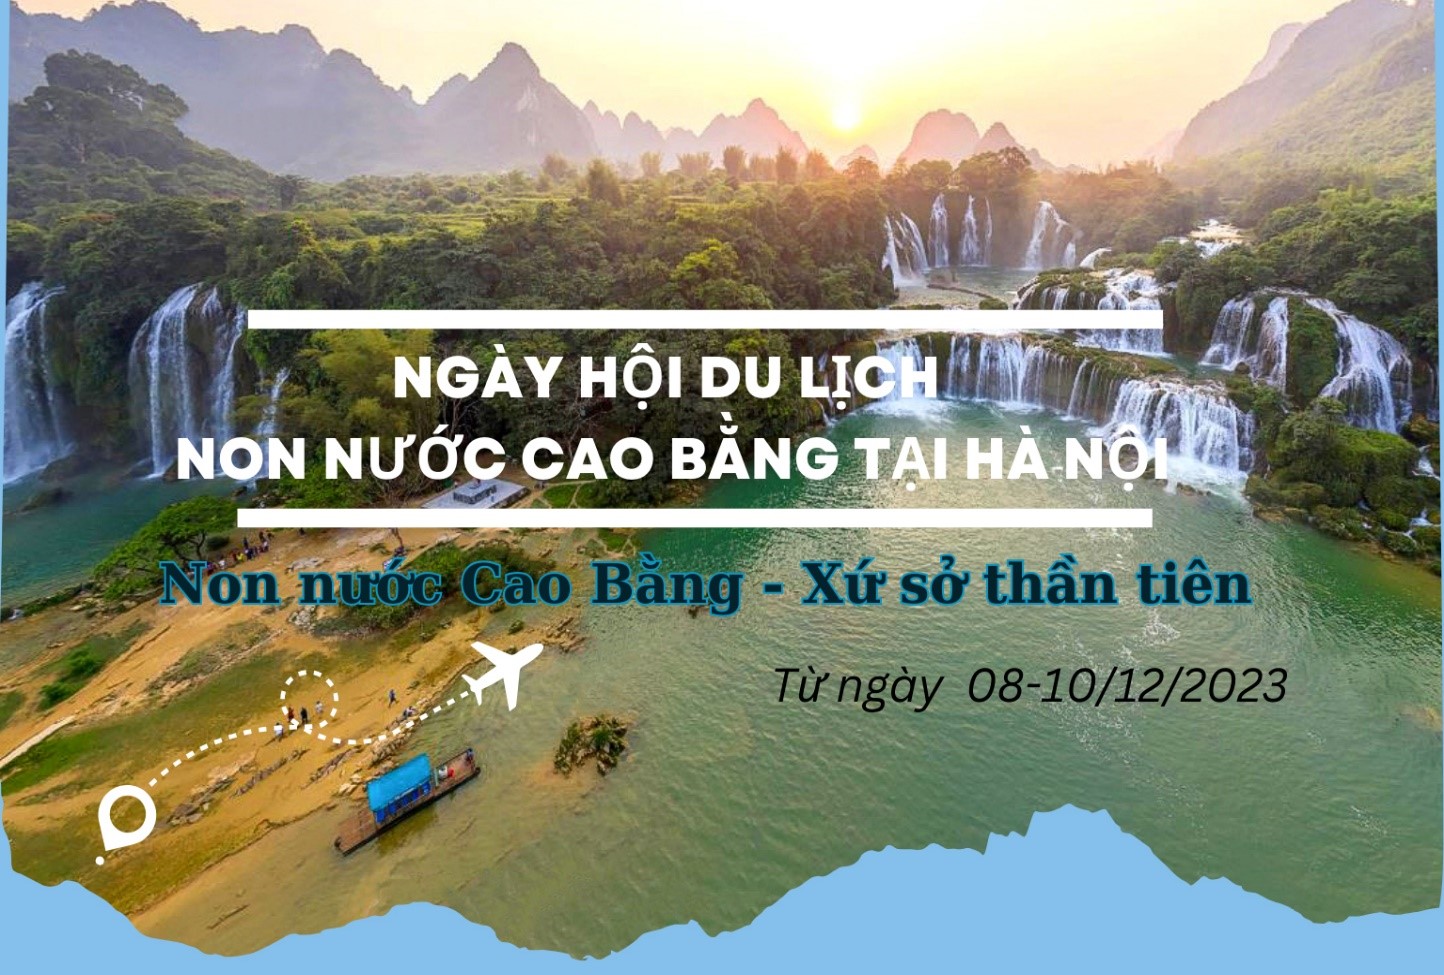 Ngày hội Du lịch Non nước Cao Bằng năm 2023 diễn ra tại Hà Nội từ ngày 08-10/12/2023